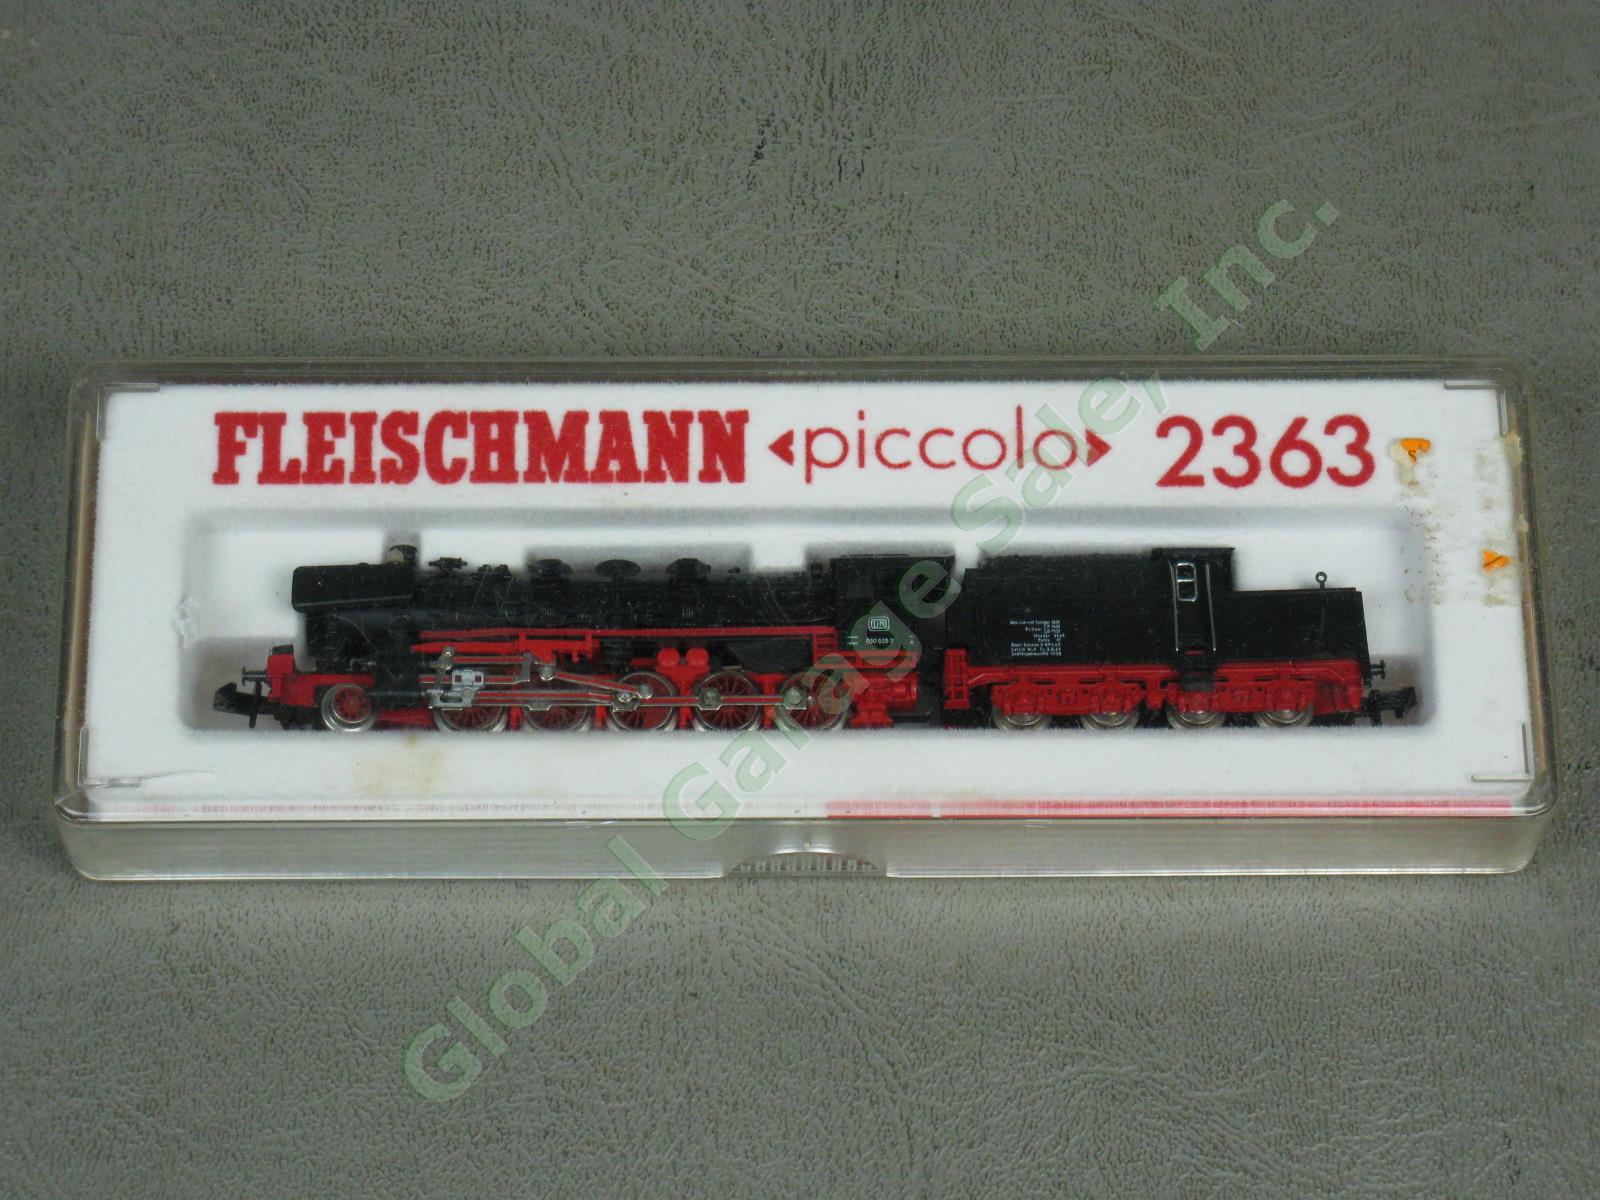 Fleischmann Piccolo 2363 N-Scale DB 2-10-0 Steam Locomotive + Tender Germany NR!